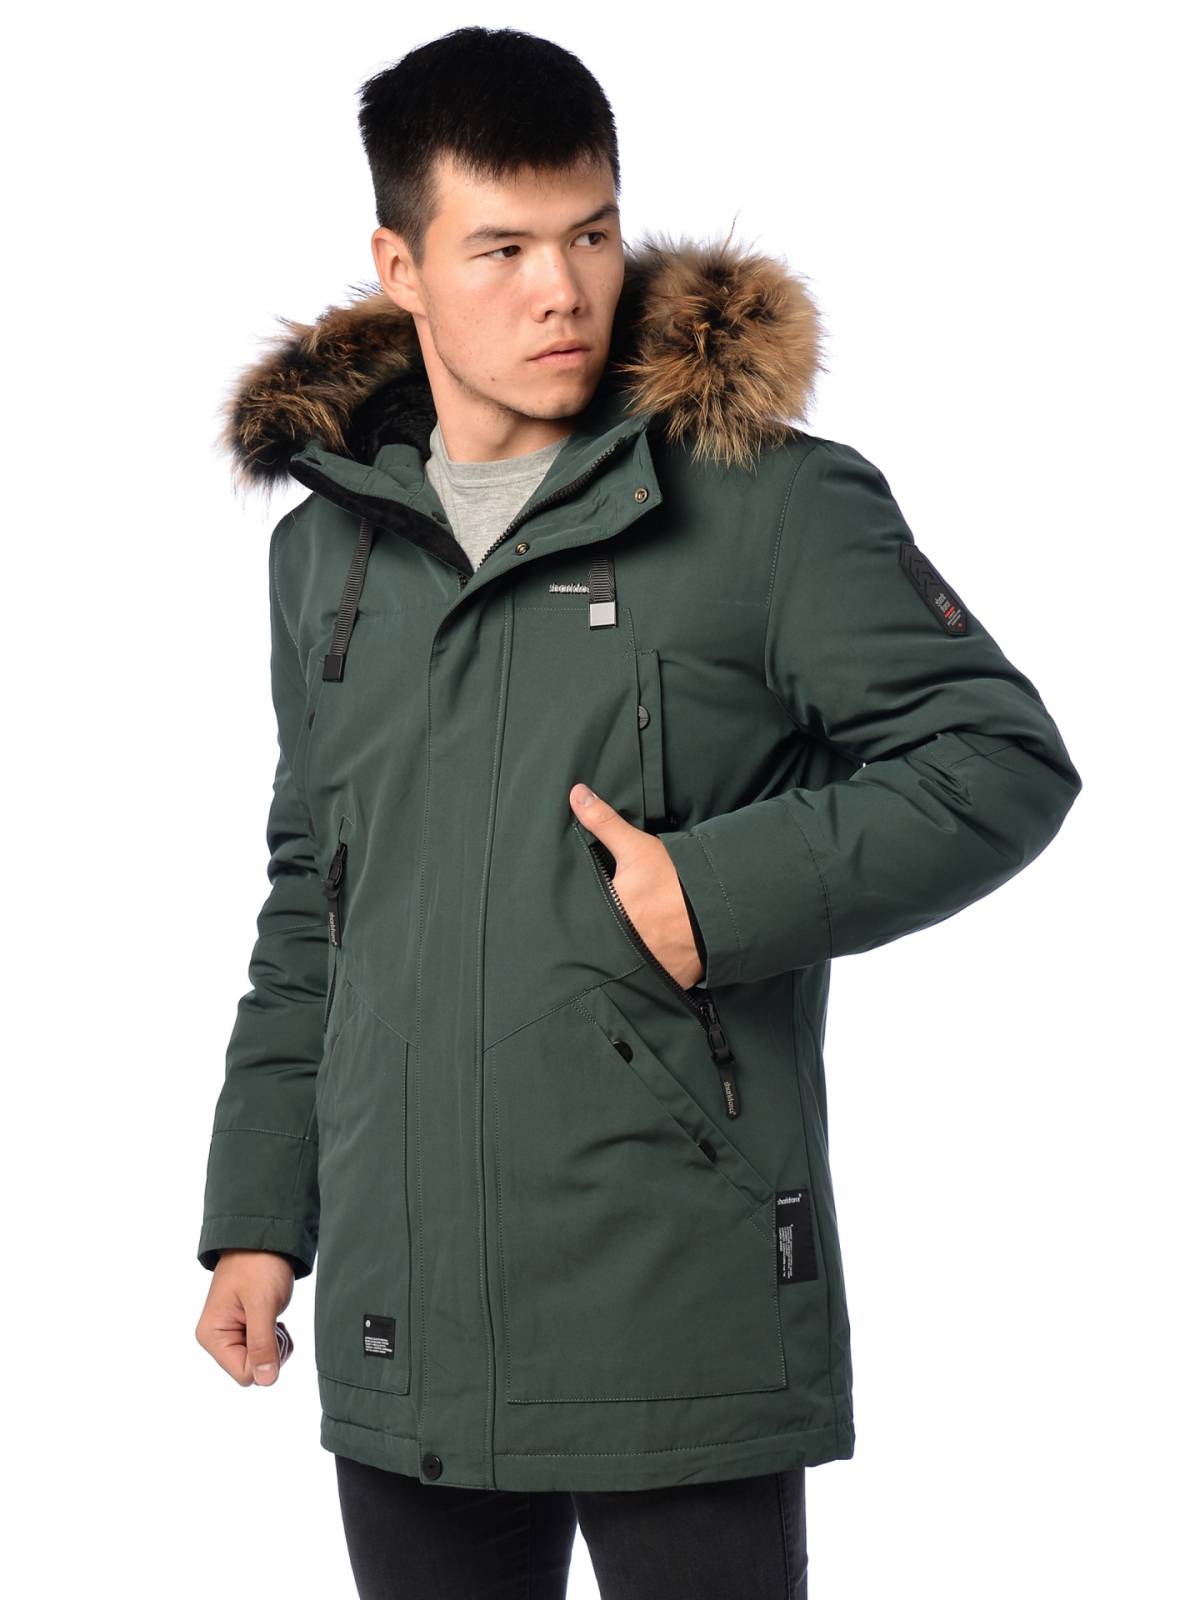 Зимняя куртка мужская Shark Force 3894 зеленая 48 RU